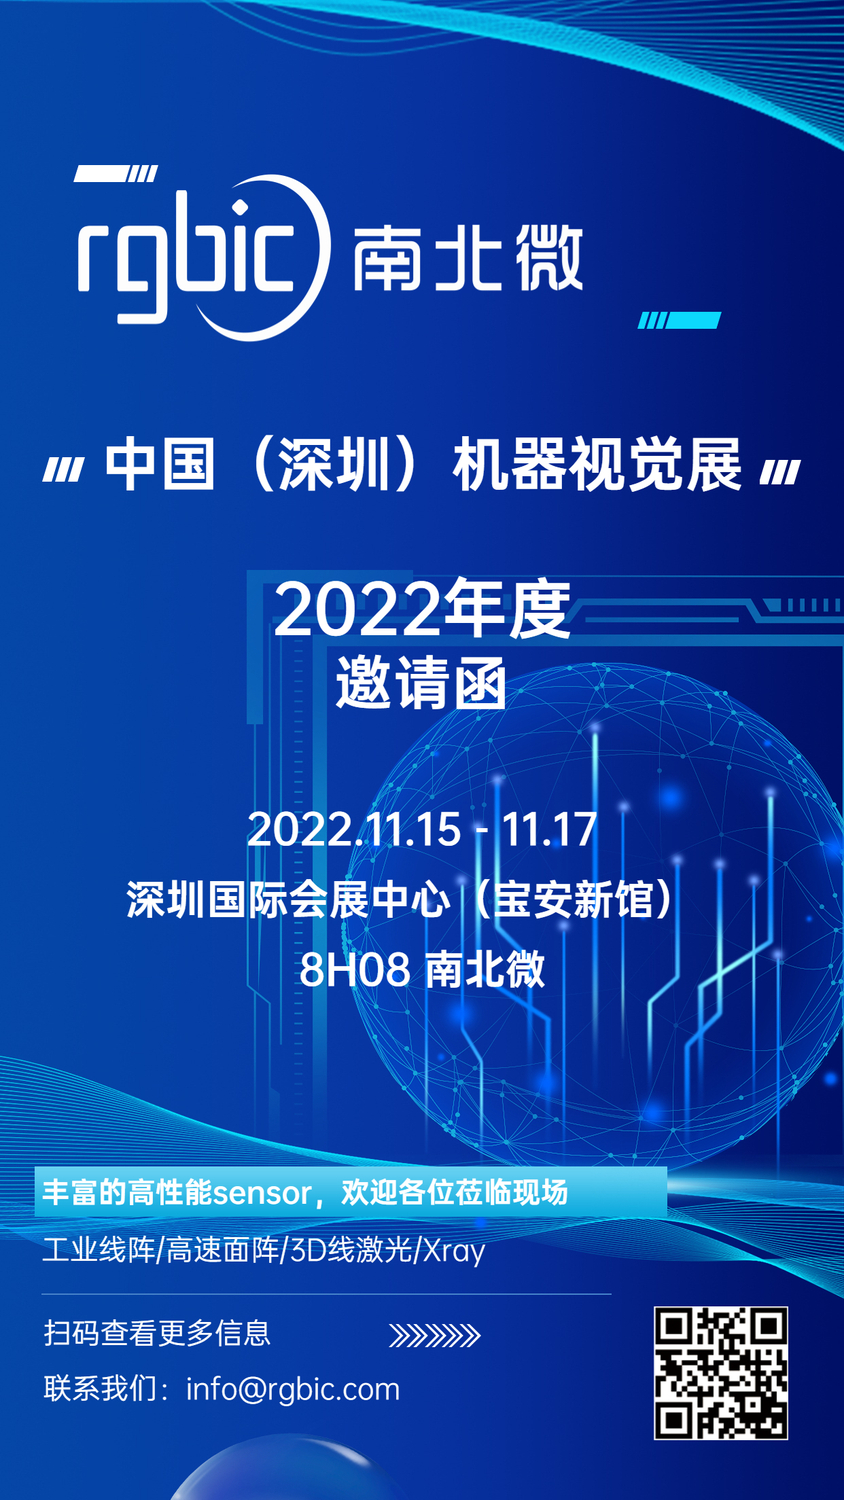 南北微与您相约Vision China（深圳）2022 机器视觉展.jpg